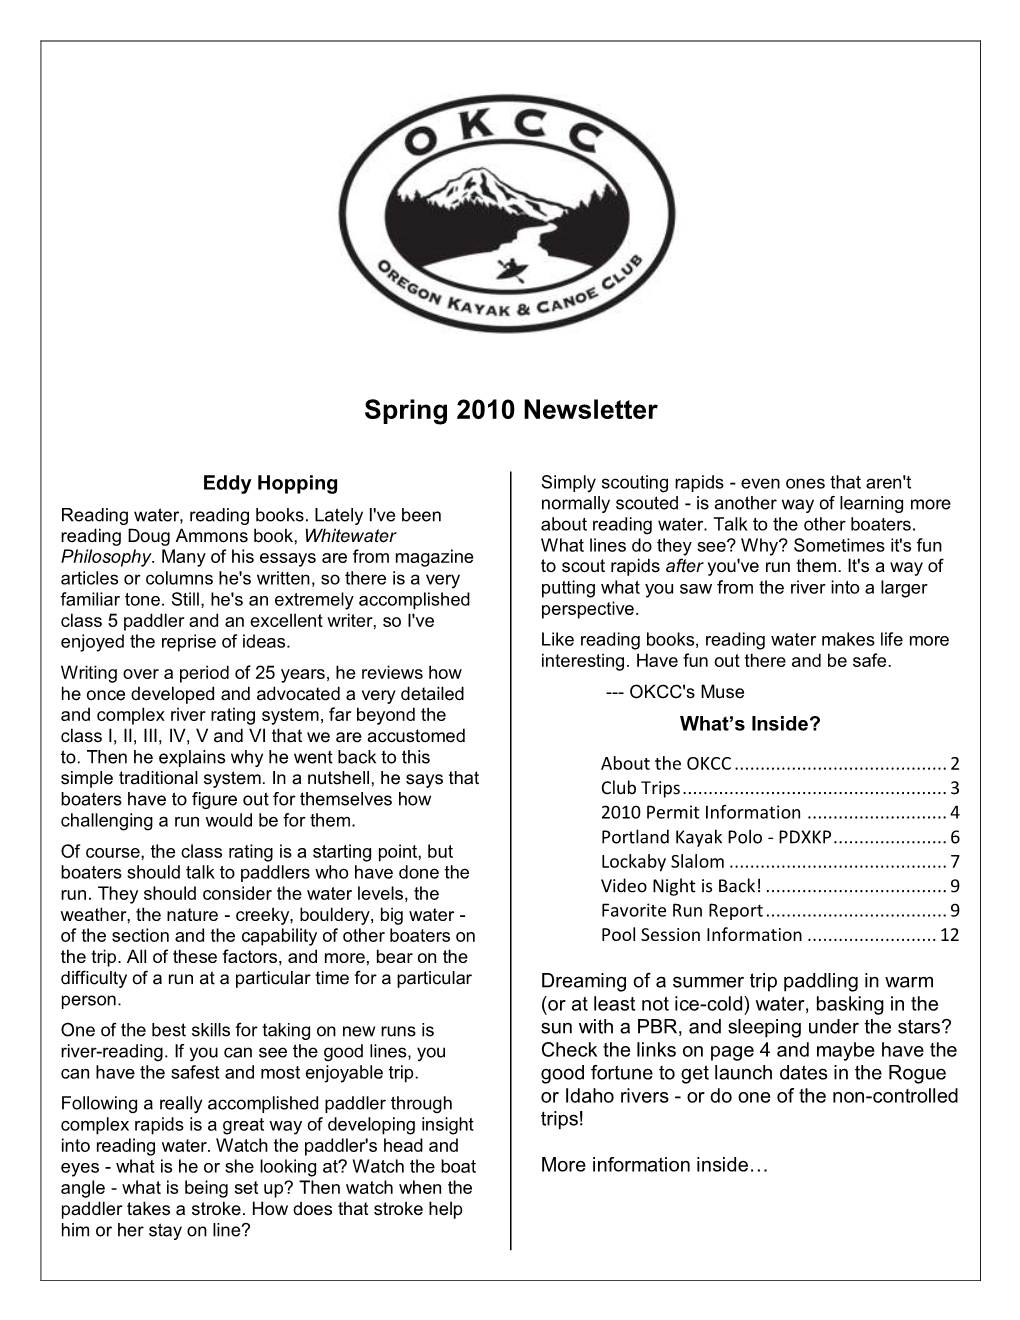 2010 Spring Newsletter